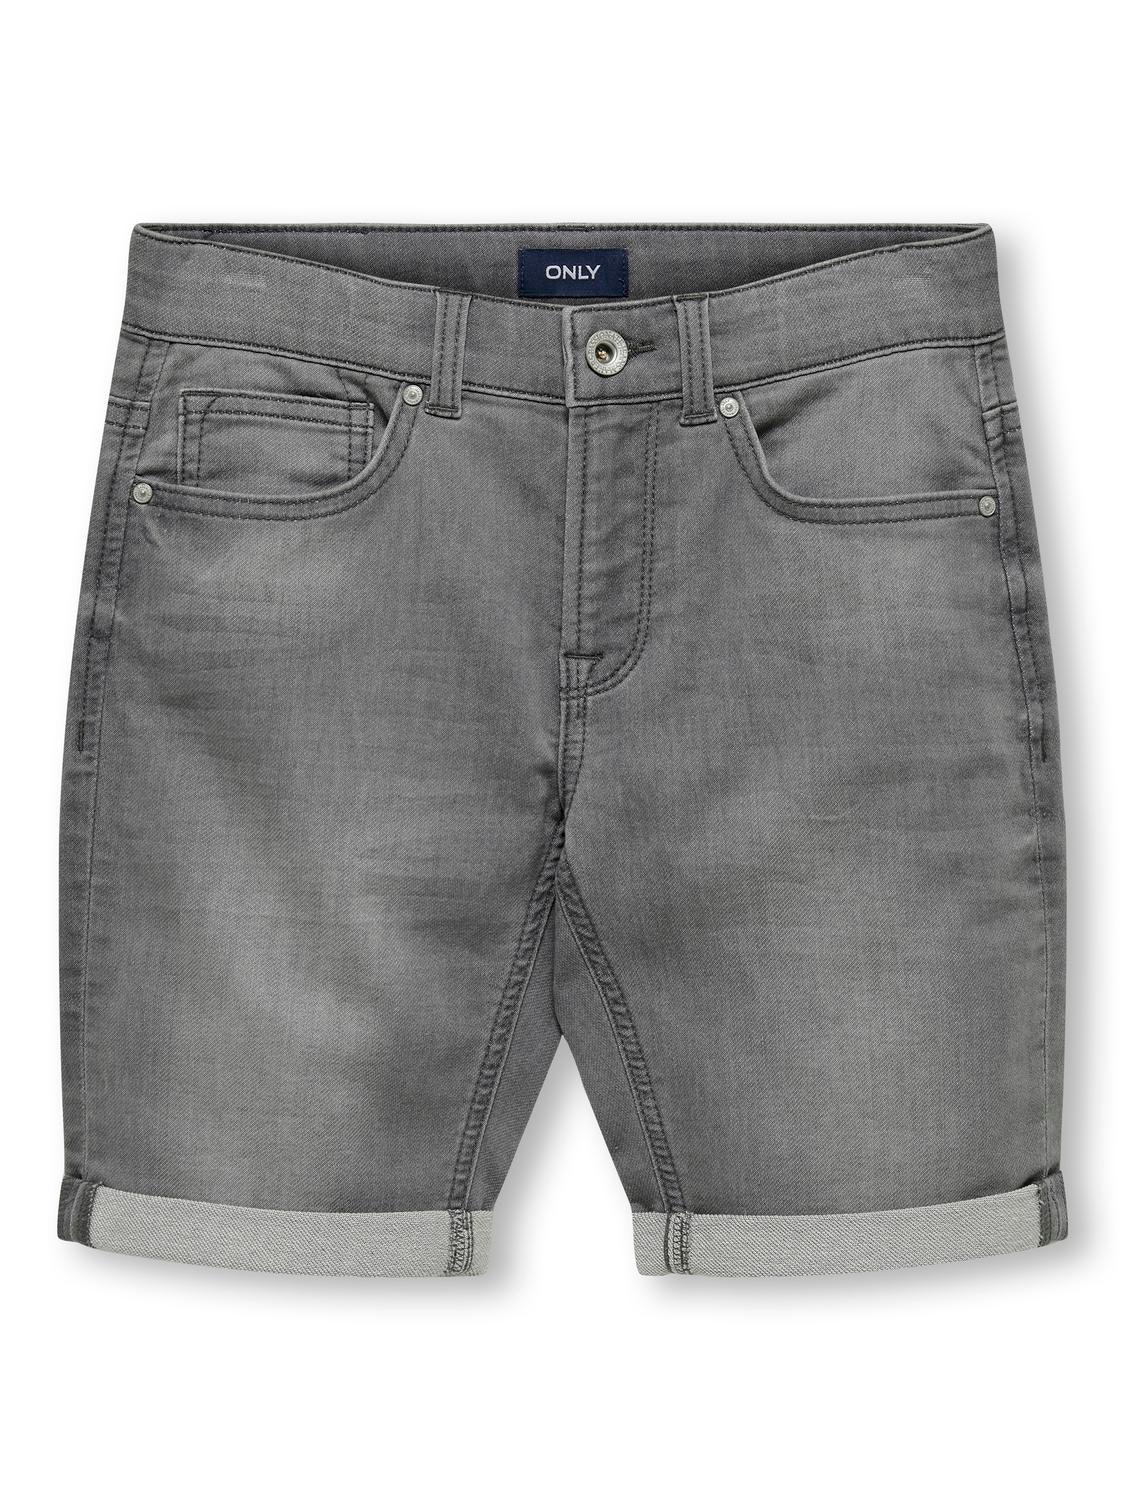 ONLY Skinny Fit Oppbrettskanter Jeans -Light Grey Denim - 15283232